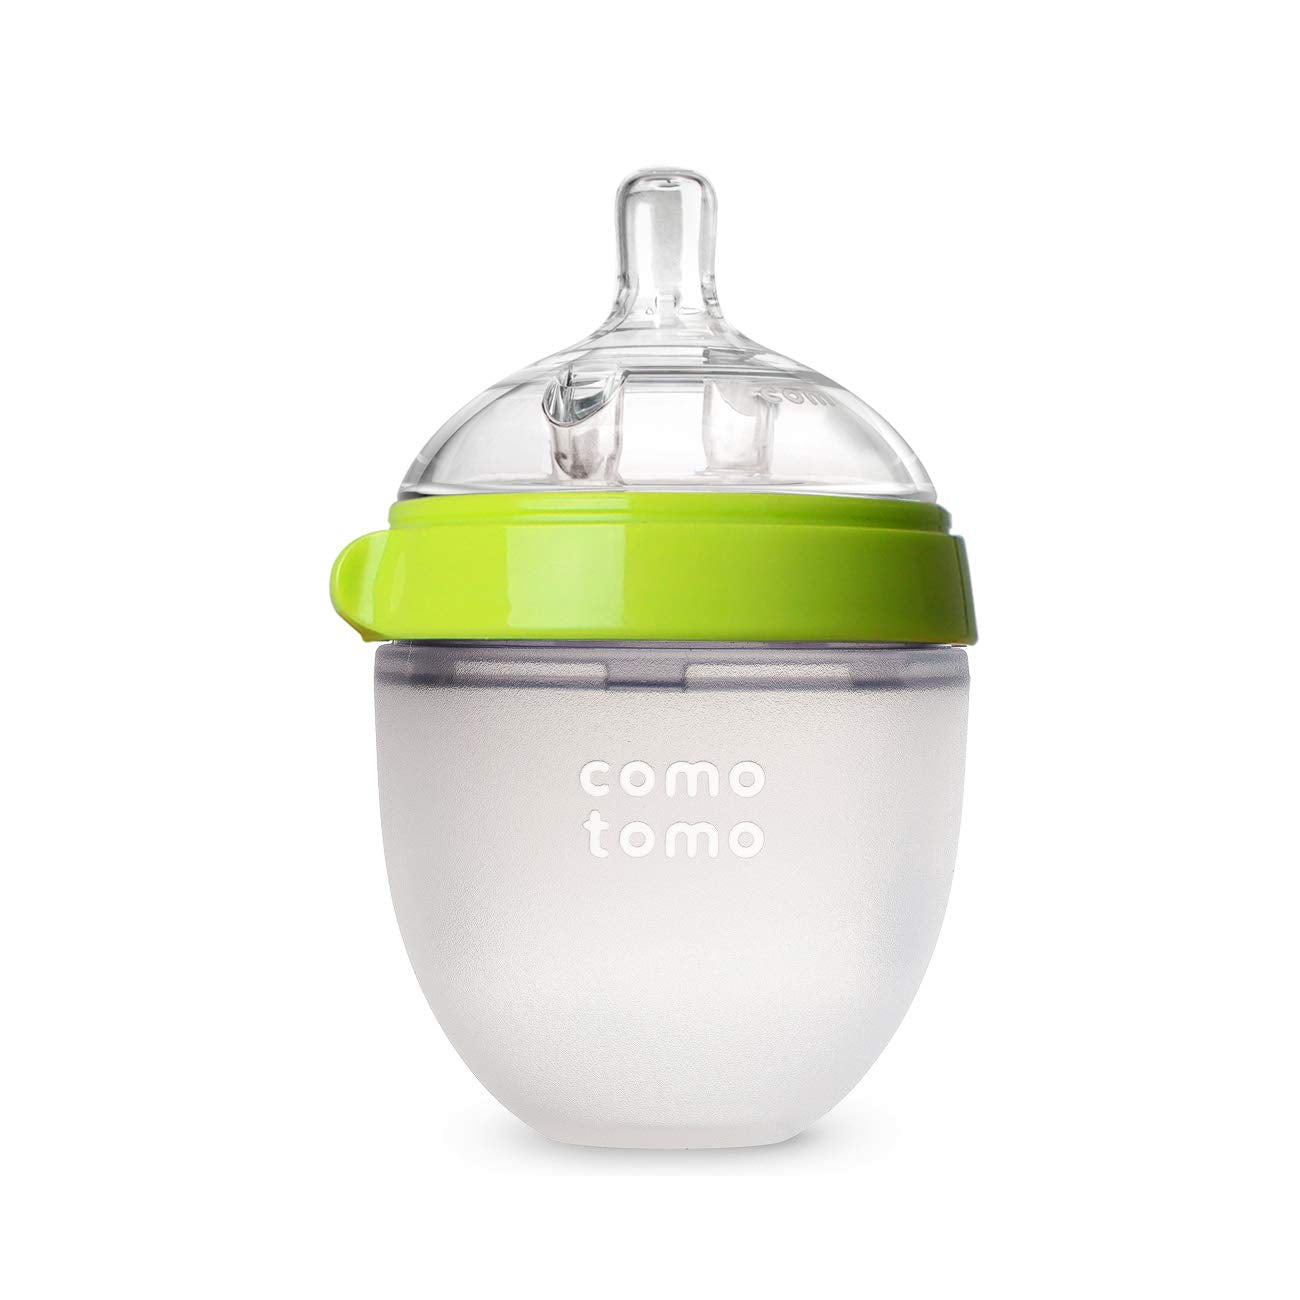 Comotomo Natural Feel Baby Bottle, Green, 5 Ounces, Single